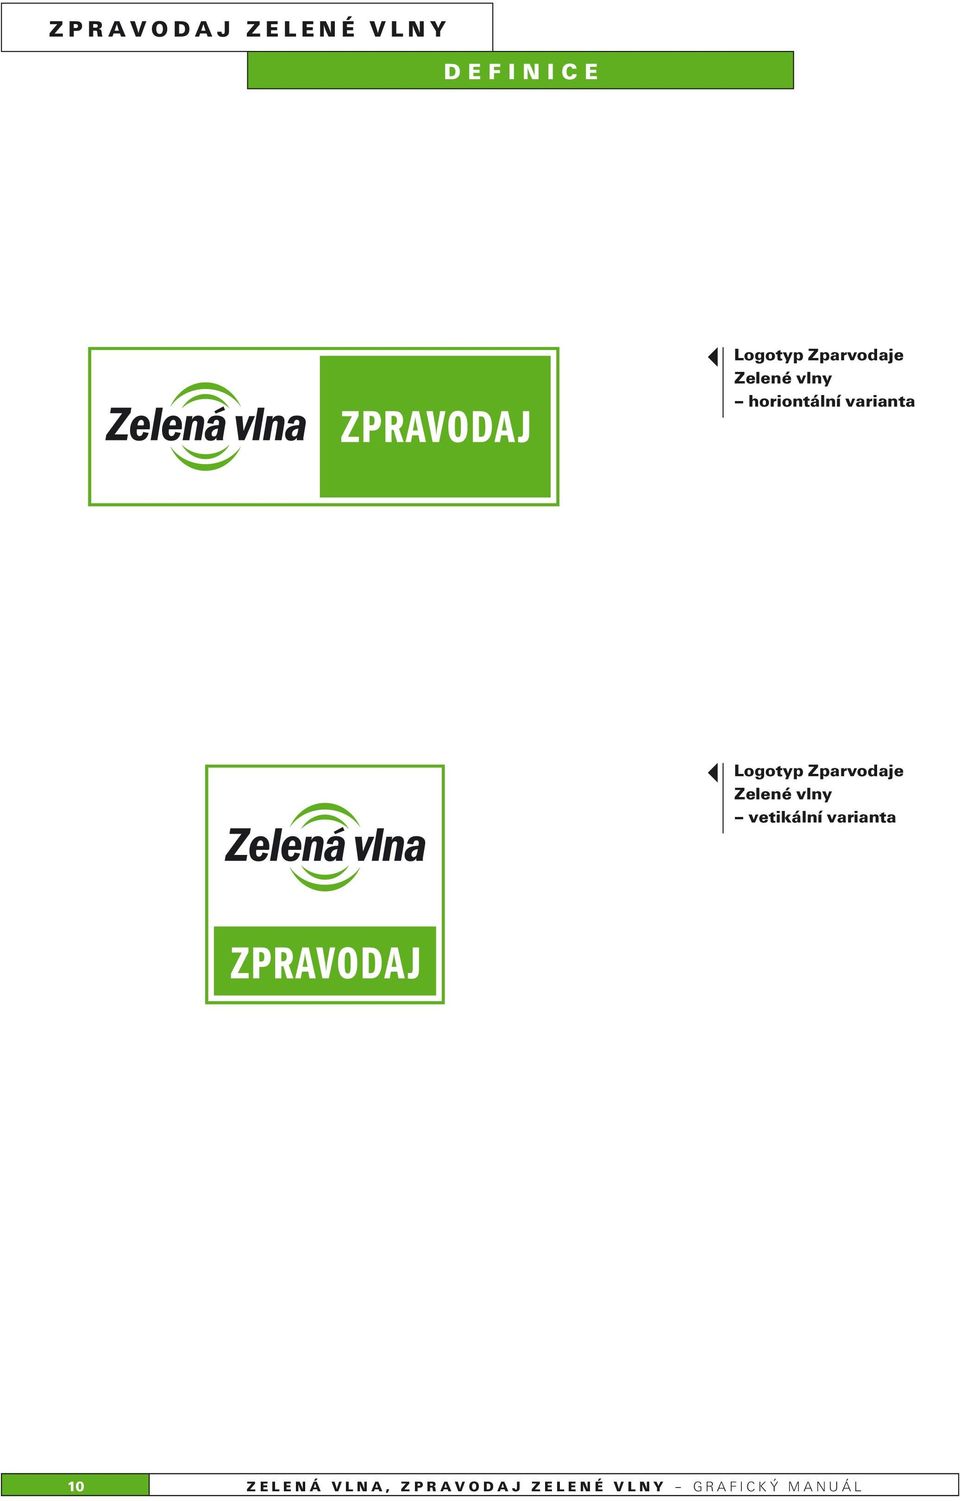 Logotyp Zparvodaje Zelené vlny vetikální